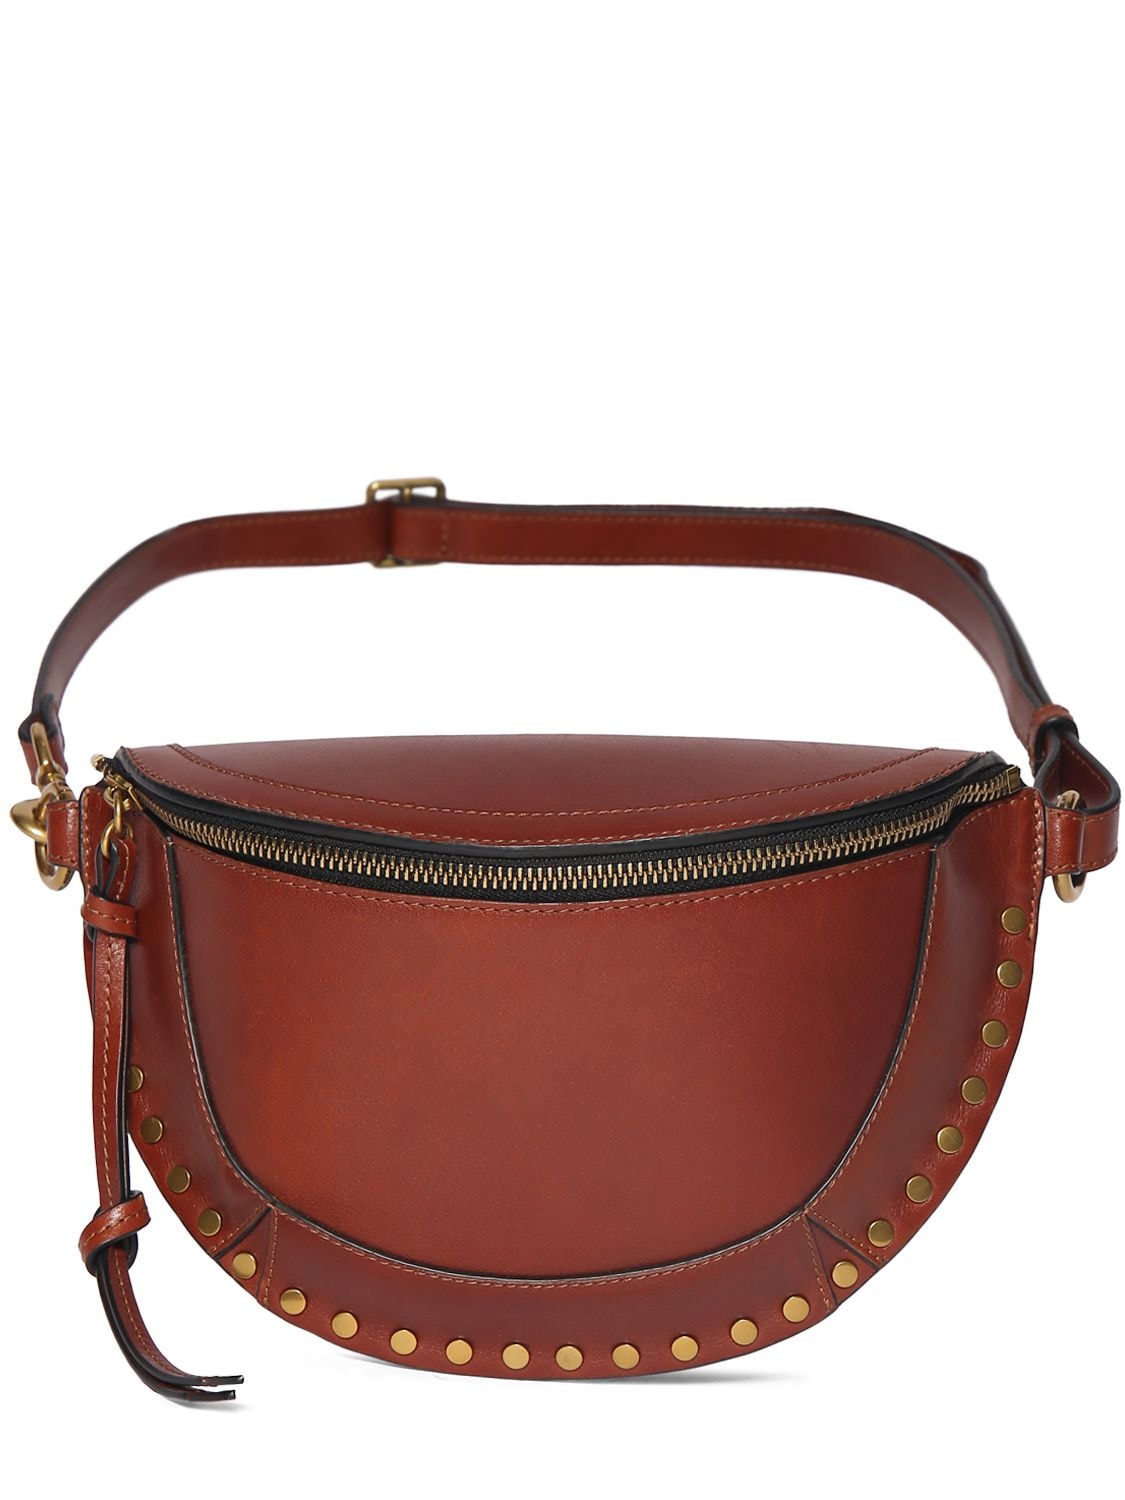 Isabel Marant Skano Studded Leather Shoulder Bag In Cognac